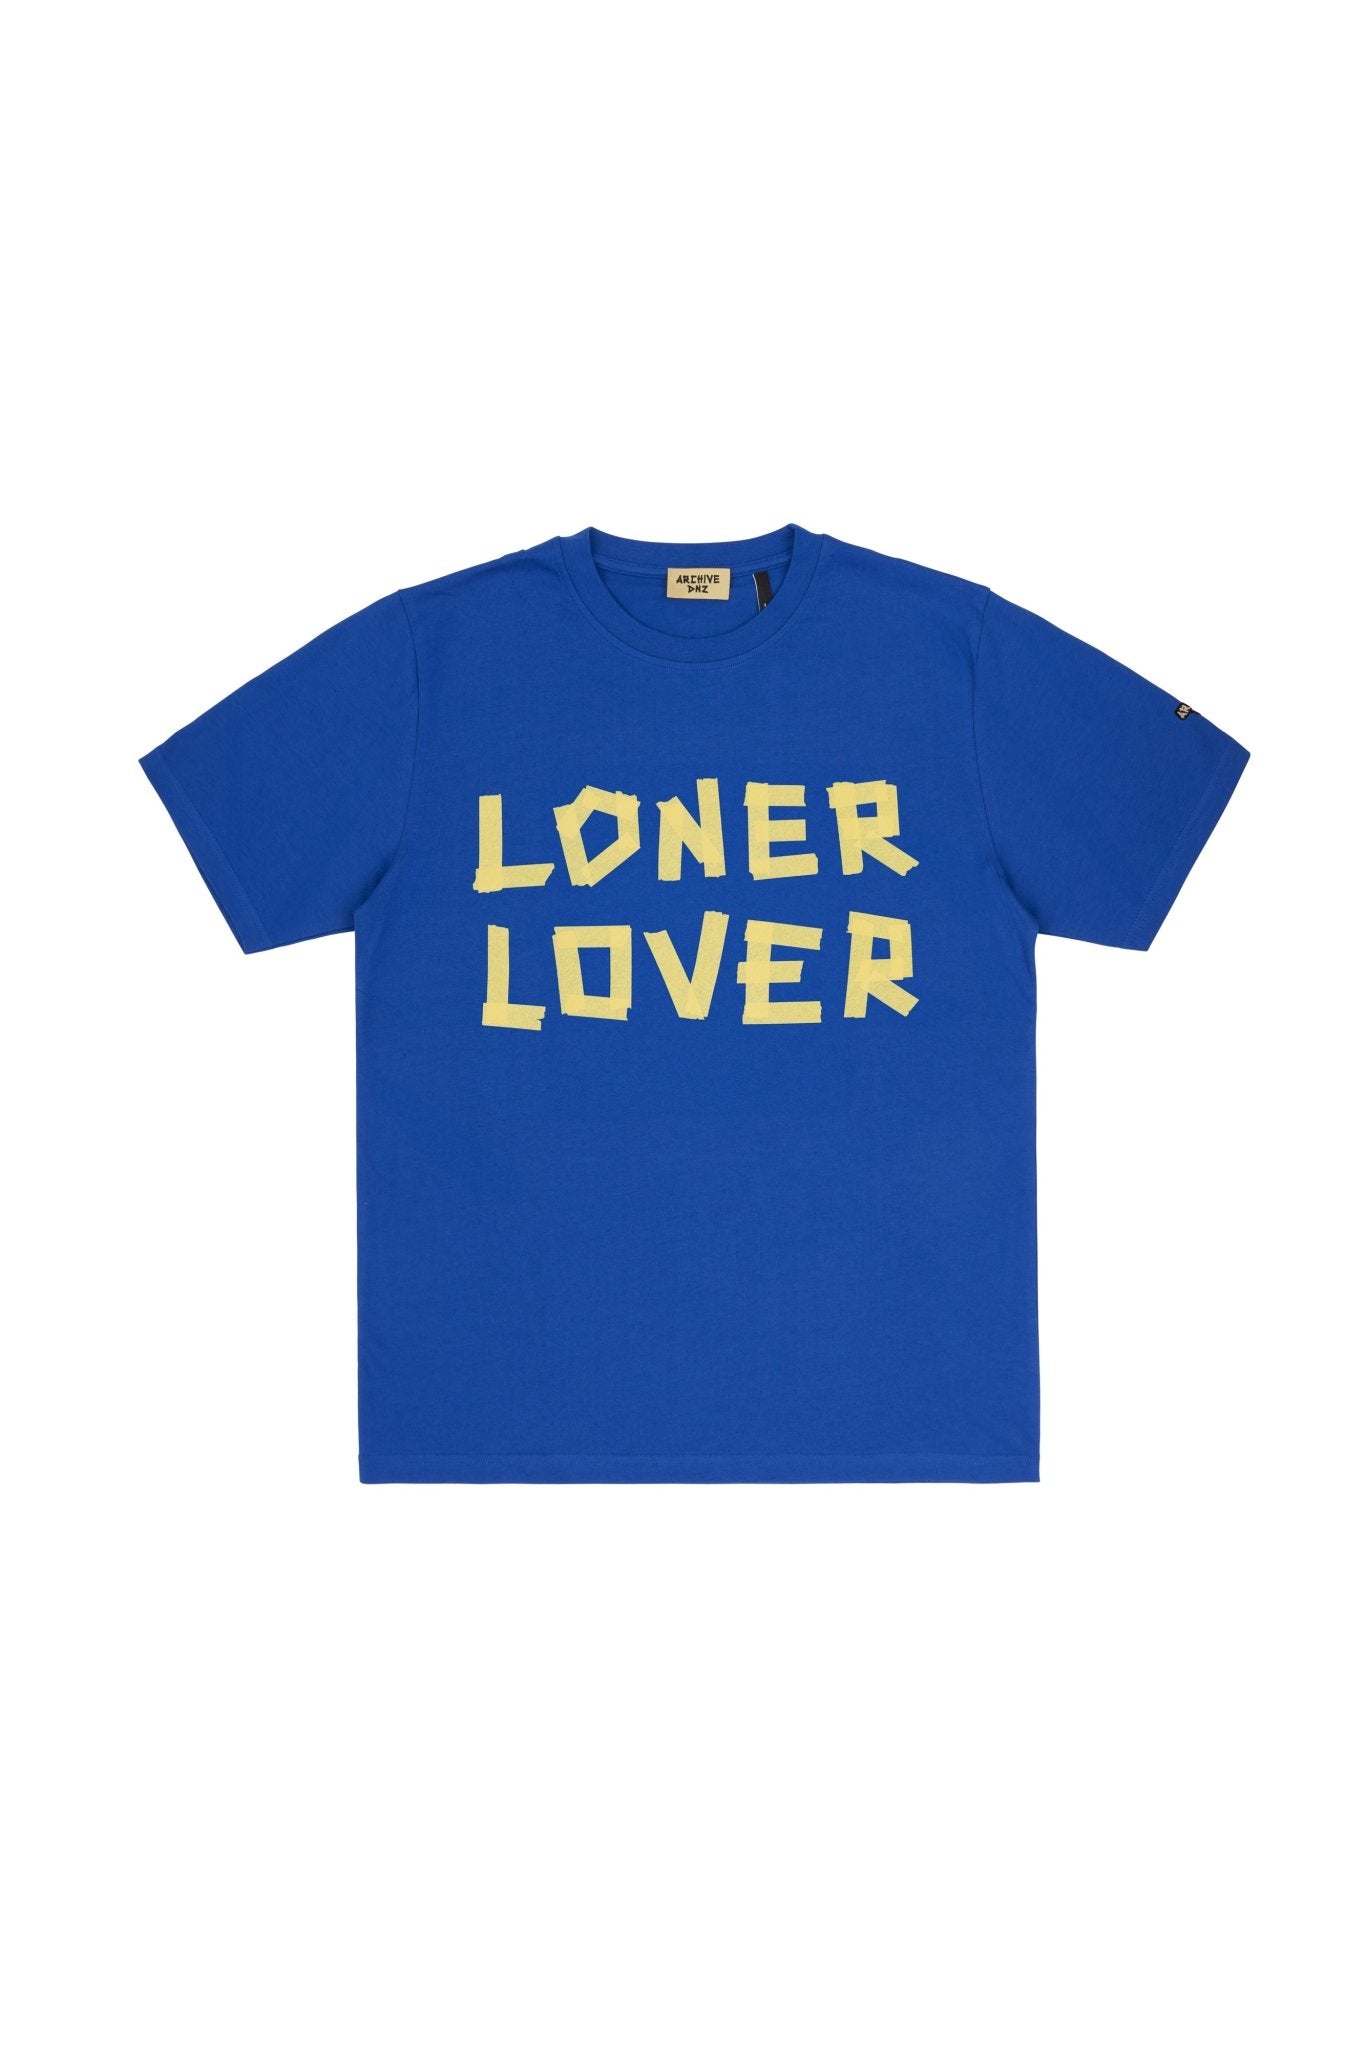 LONER LOVER T-SHIRT - ARCHIVE DNZT-shirtARCHIVE DNZARCHIVE DNZS